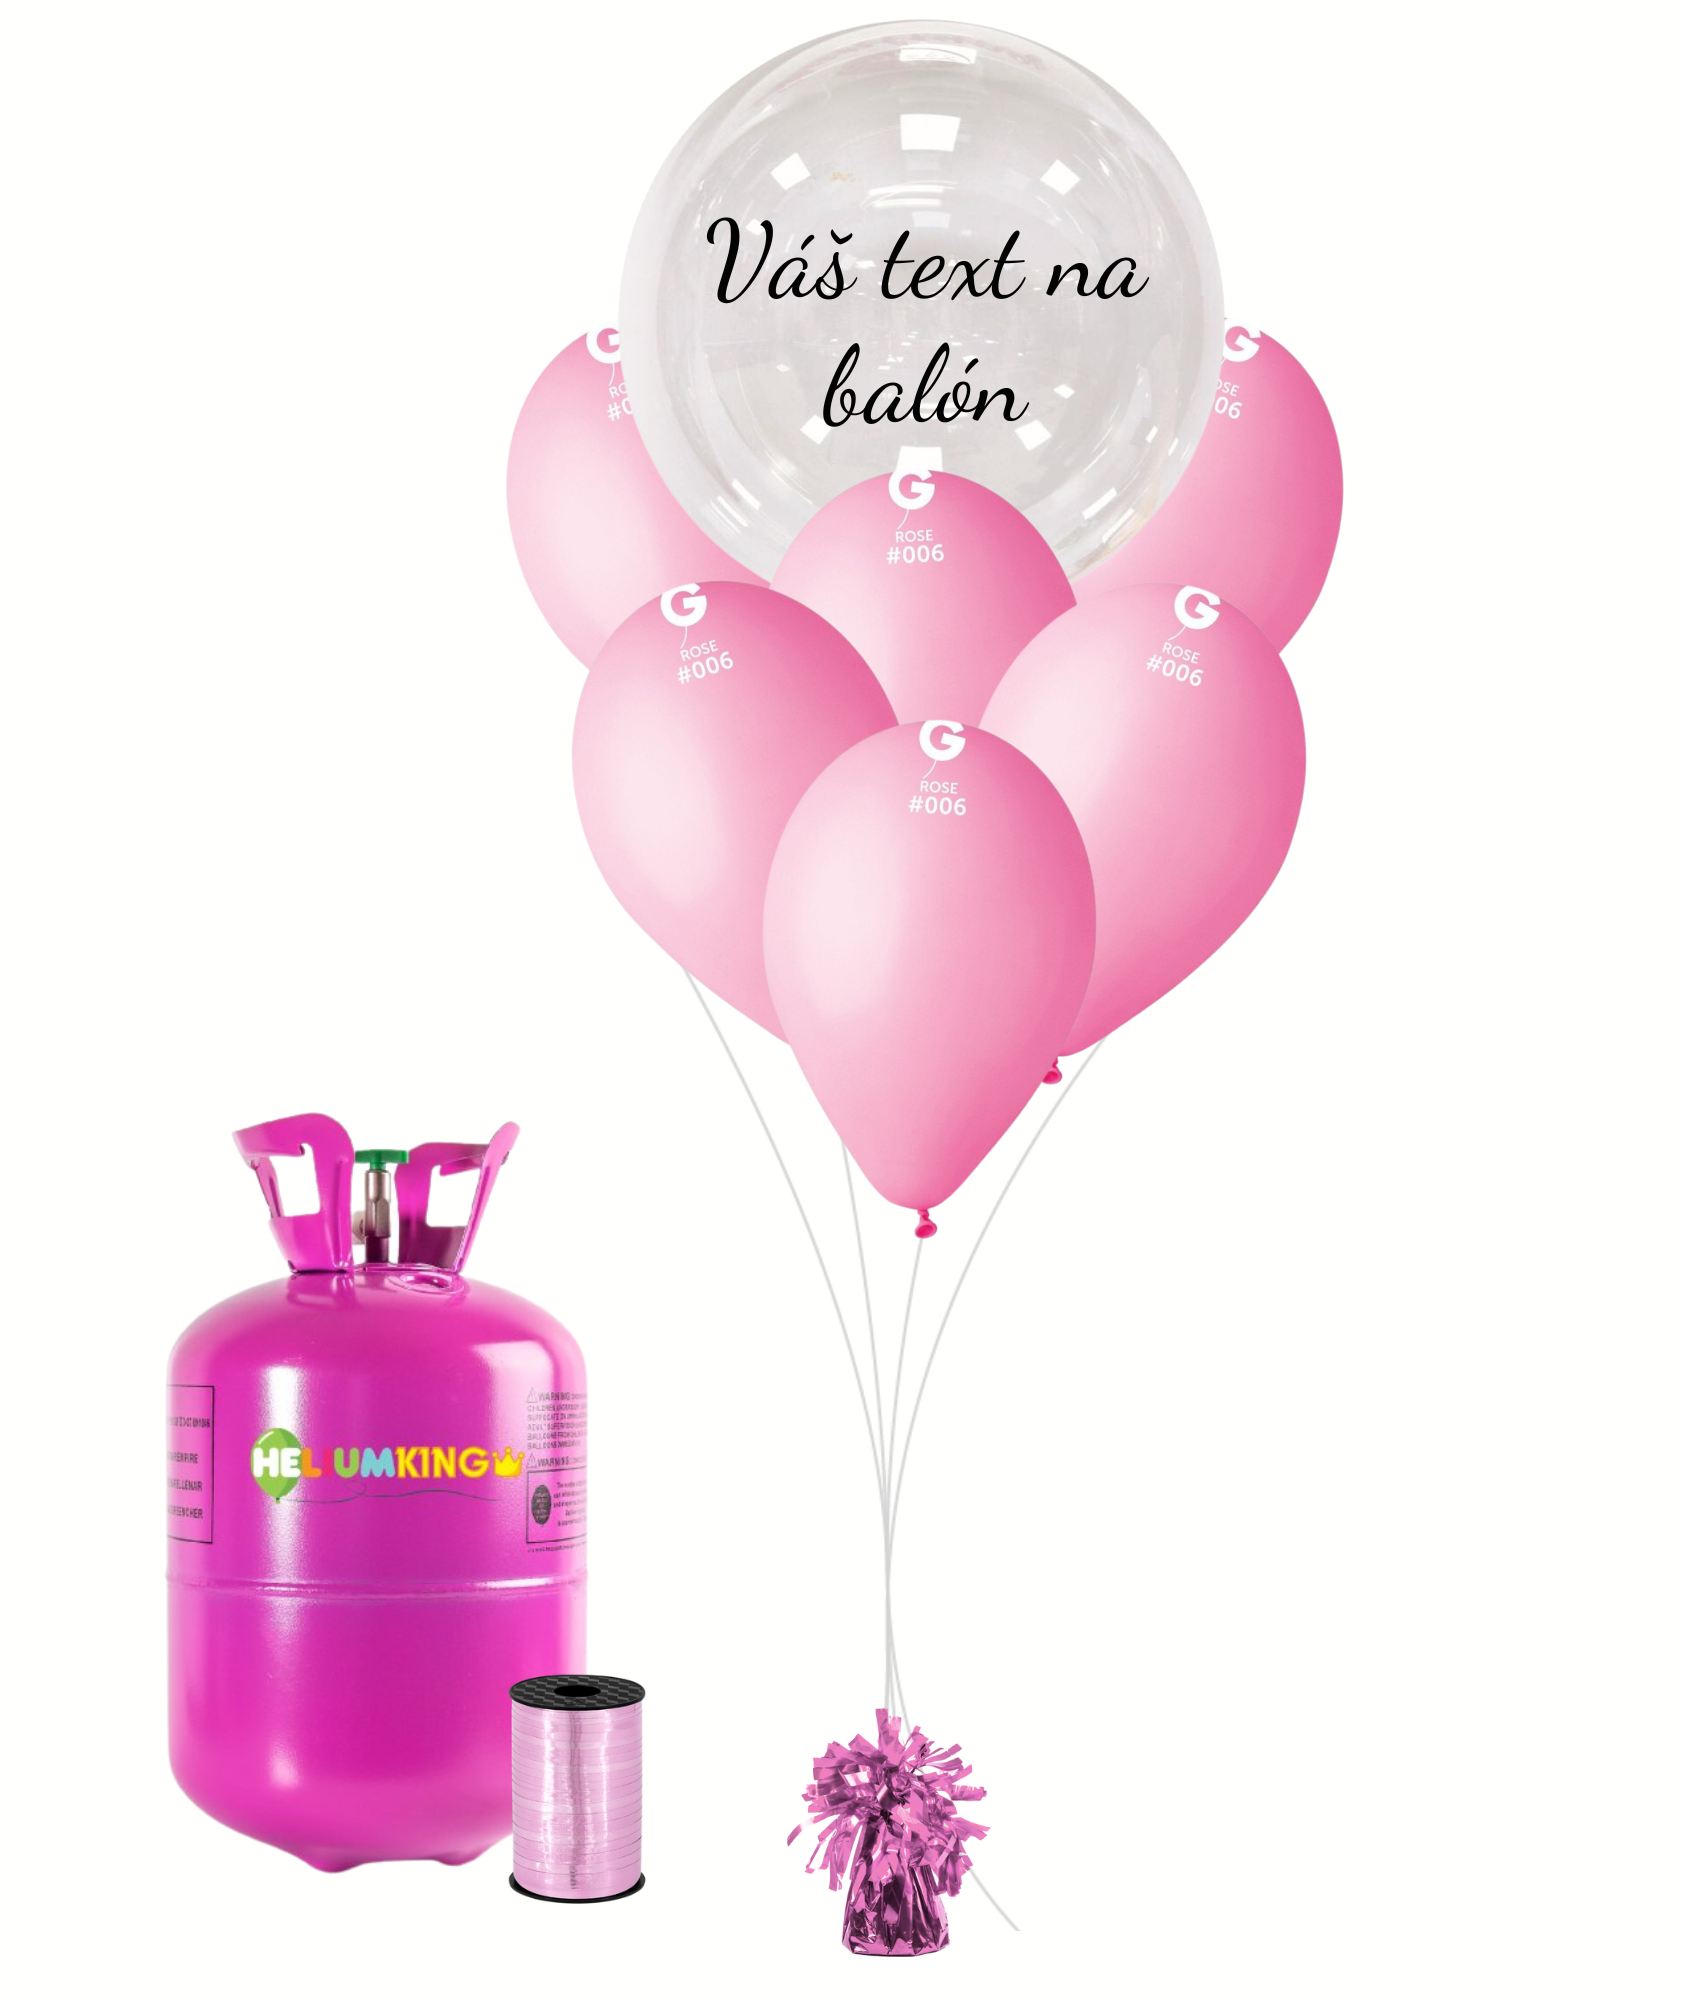 Personal Personalizovaný helium párty set růžový - Průsvitný balón 11 ks